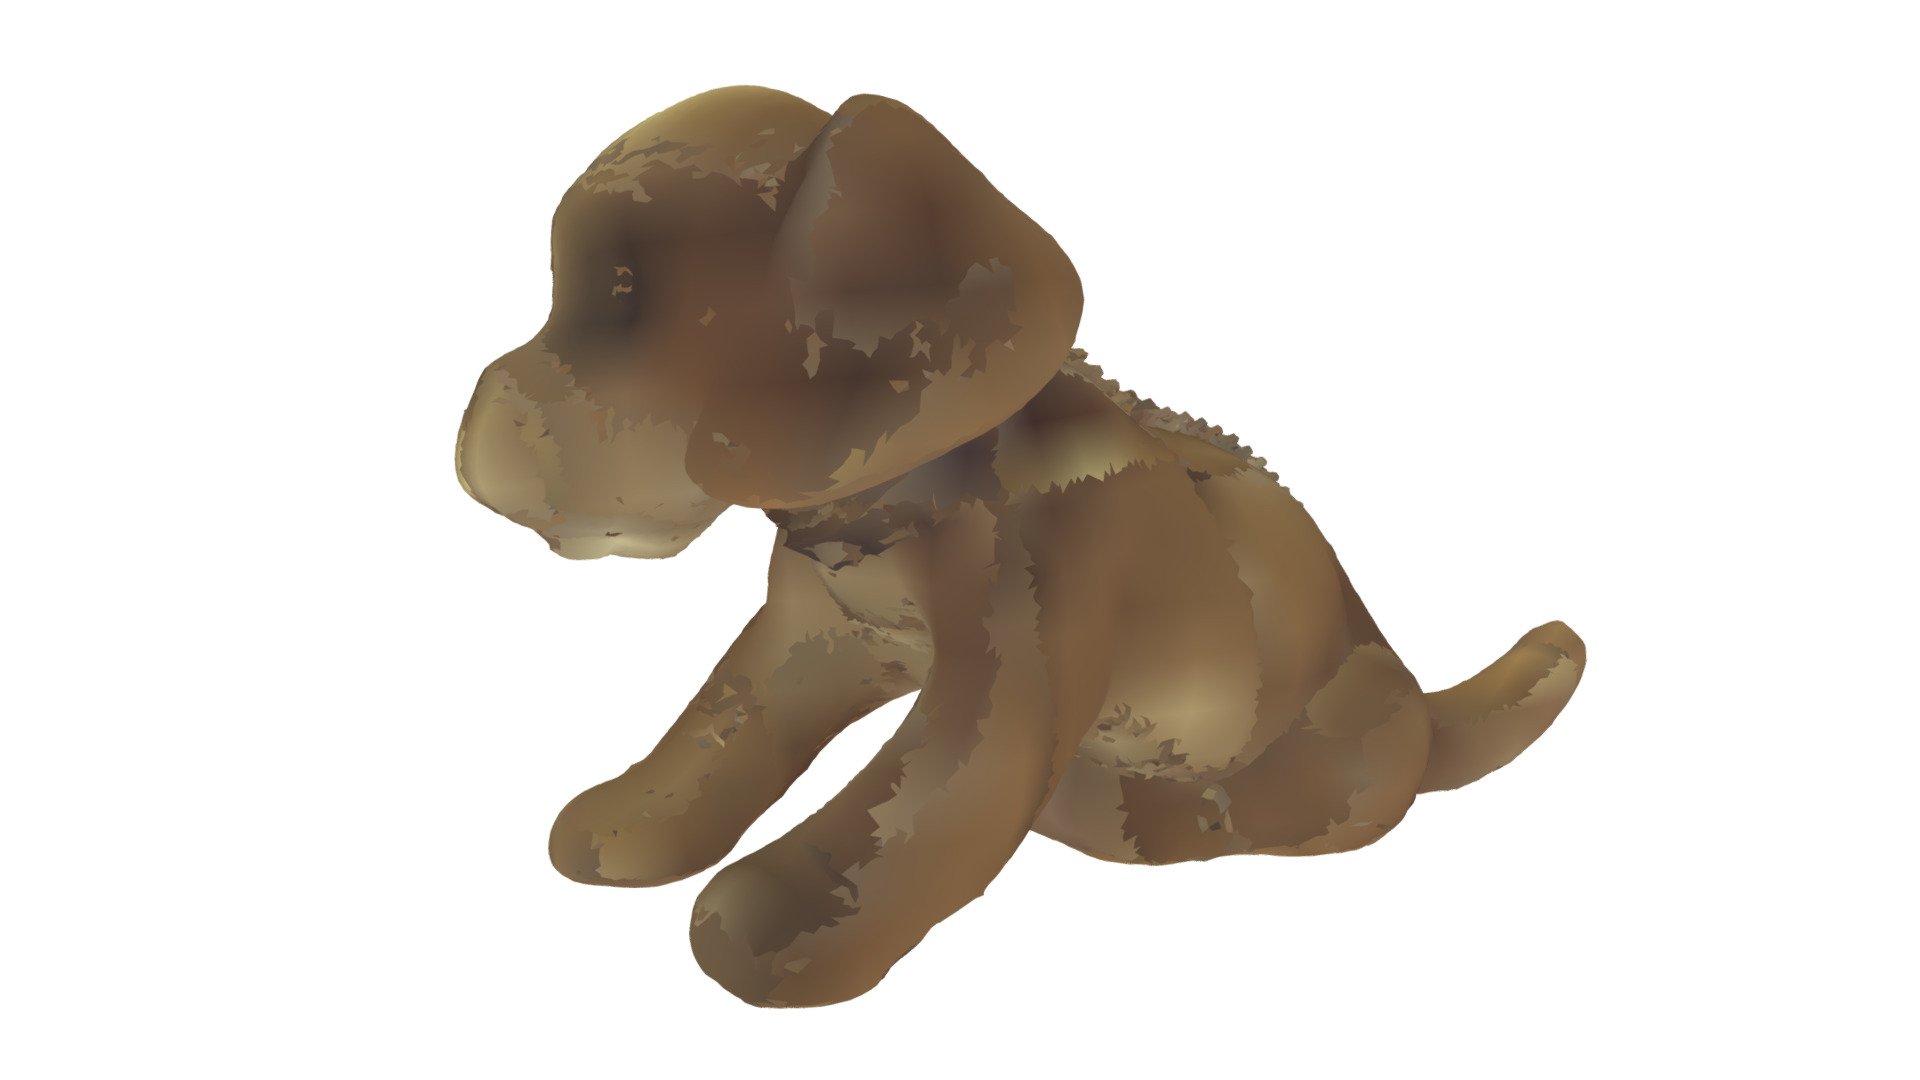 Plastic toy dog 3D model by theFinnishToyMuseum